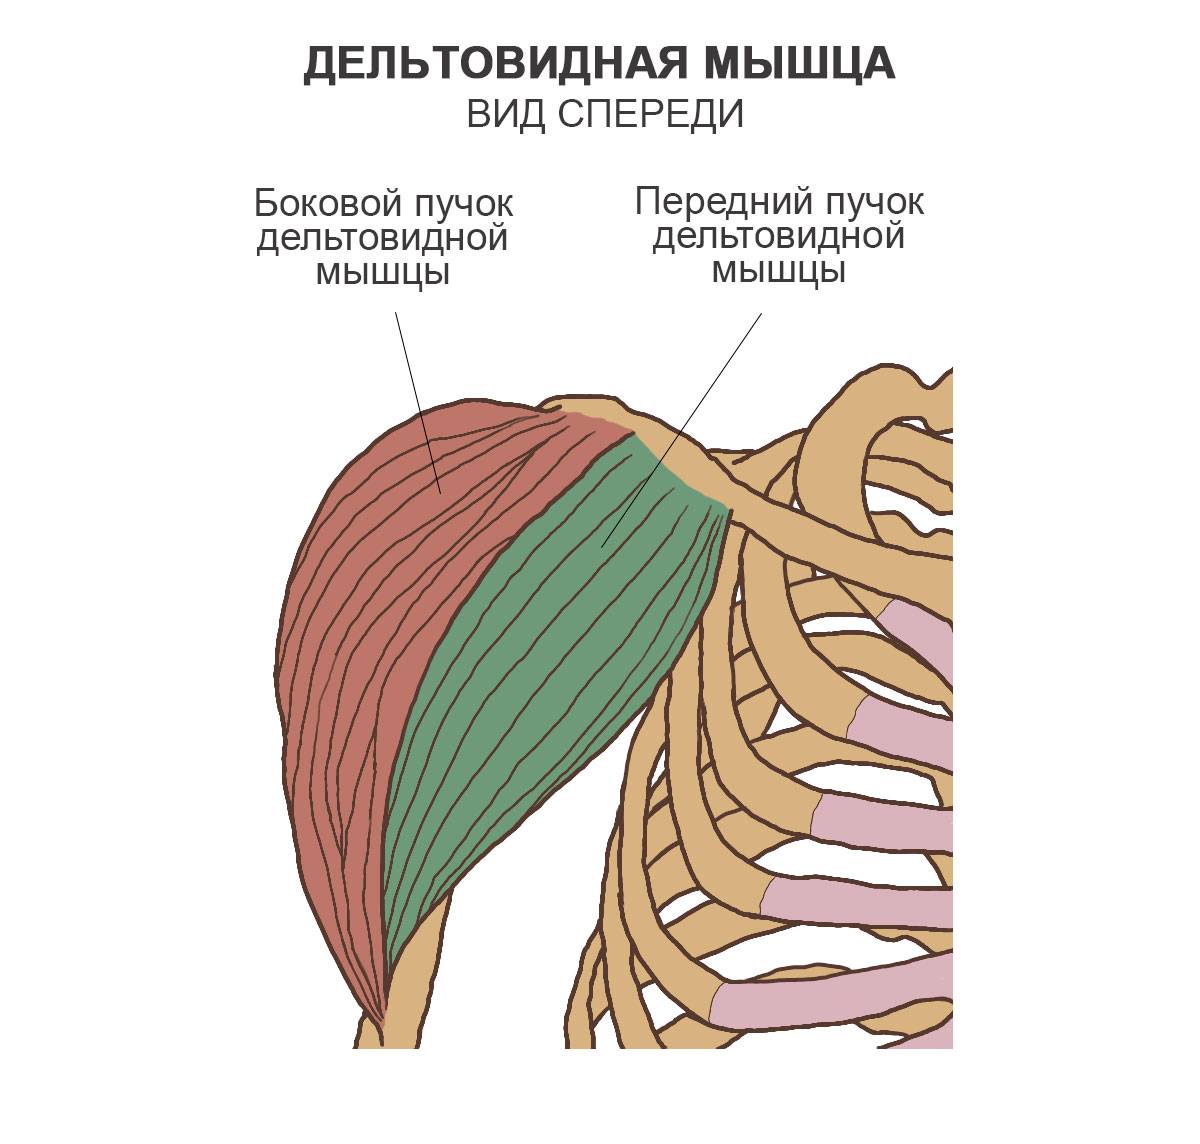 Дельтовидная мышца - вики